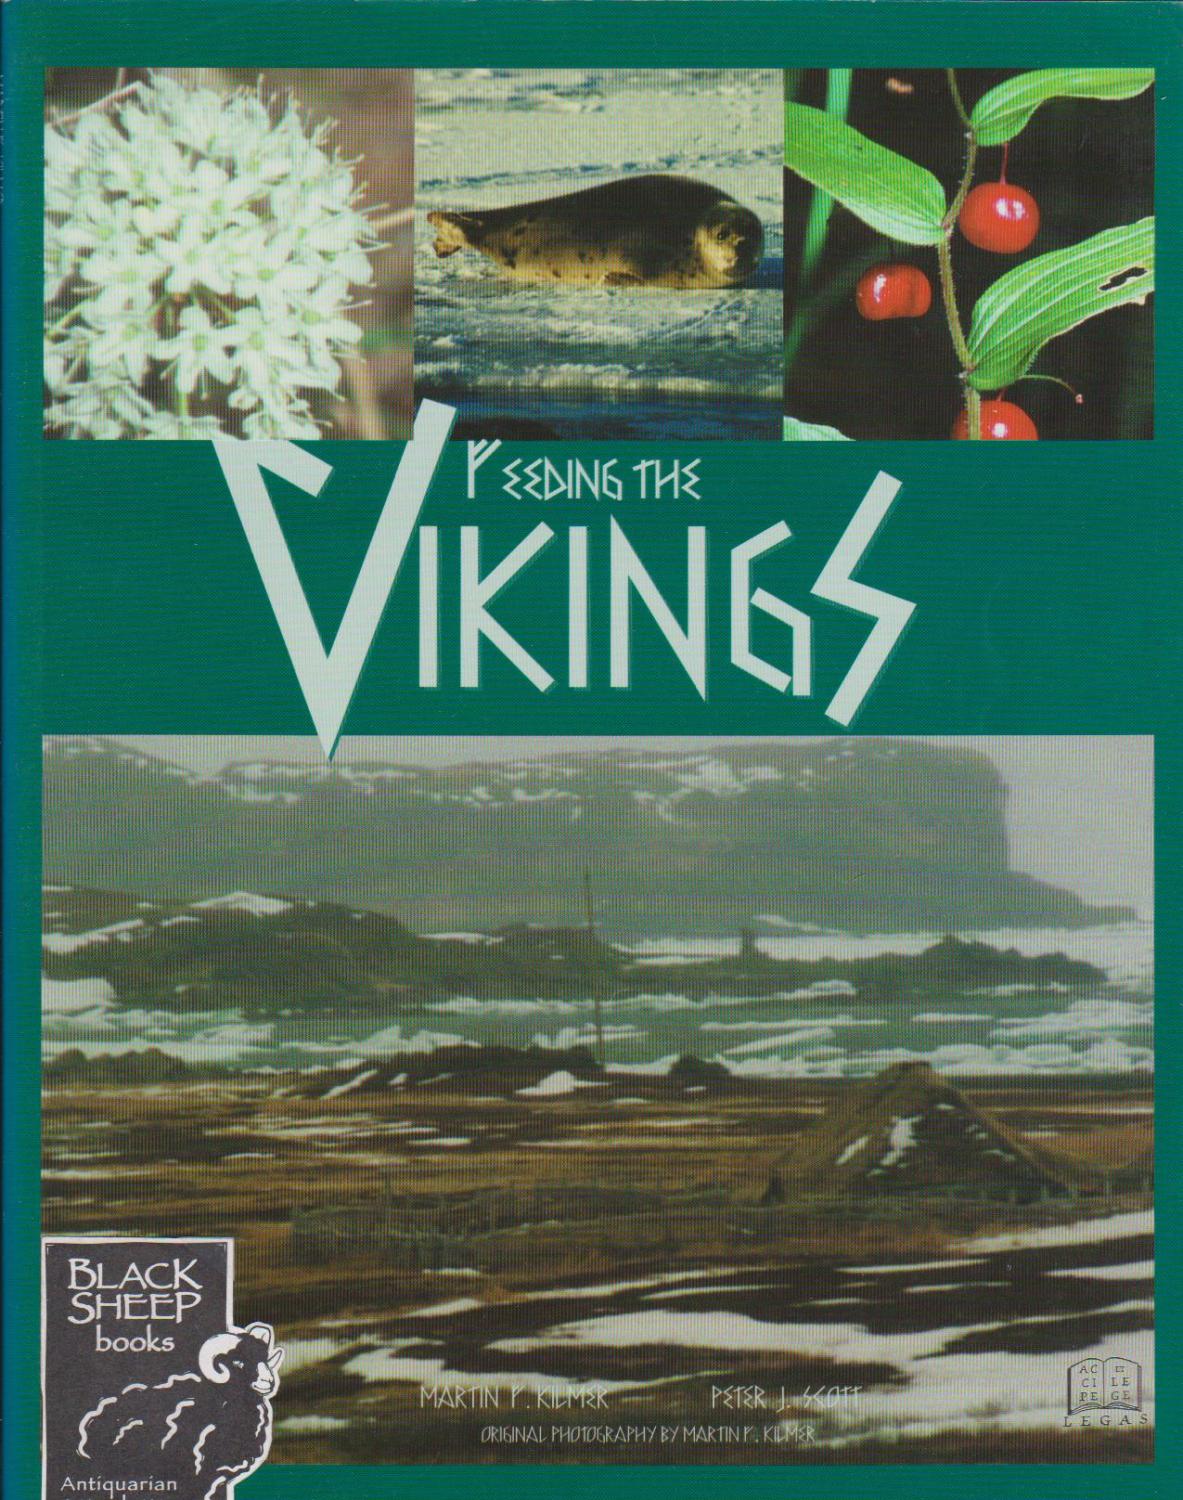 Feeding The Vikings - Kilmer, Martin F. & Peter J. Scott